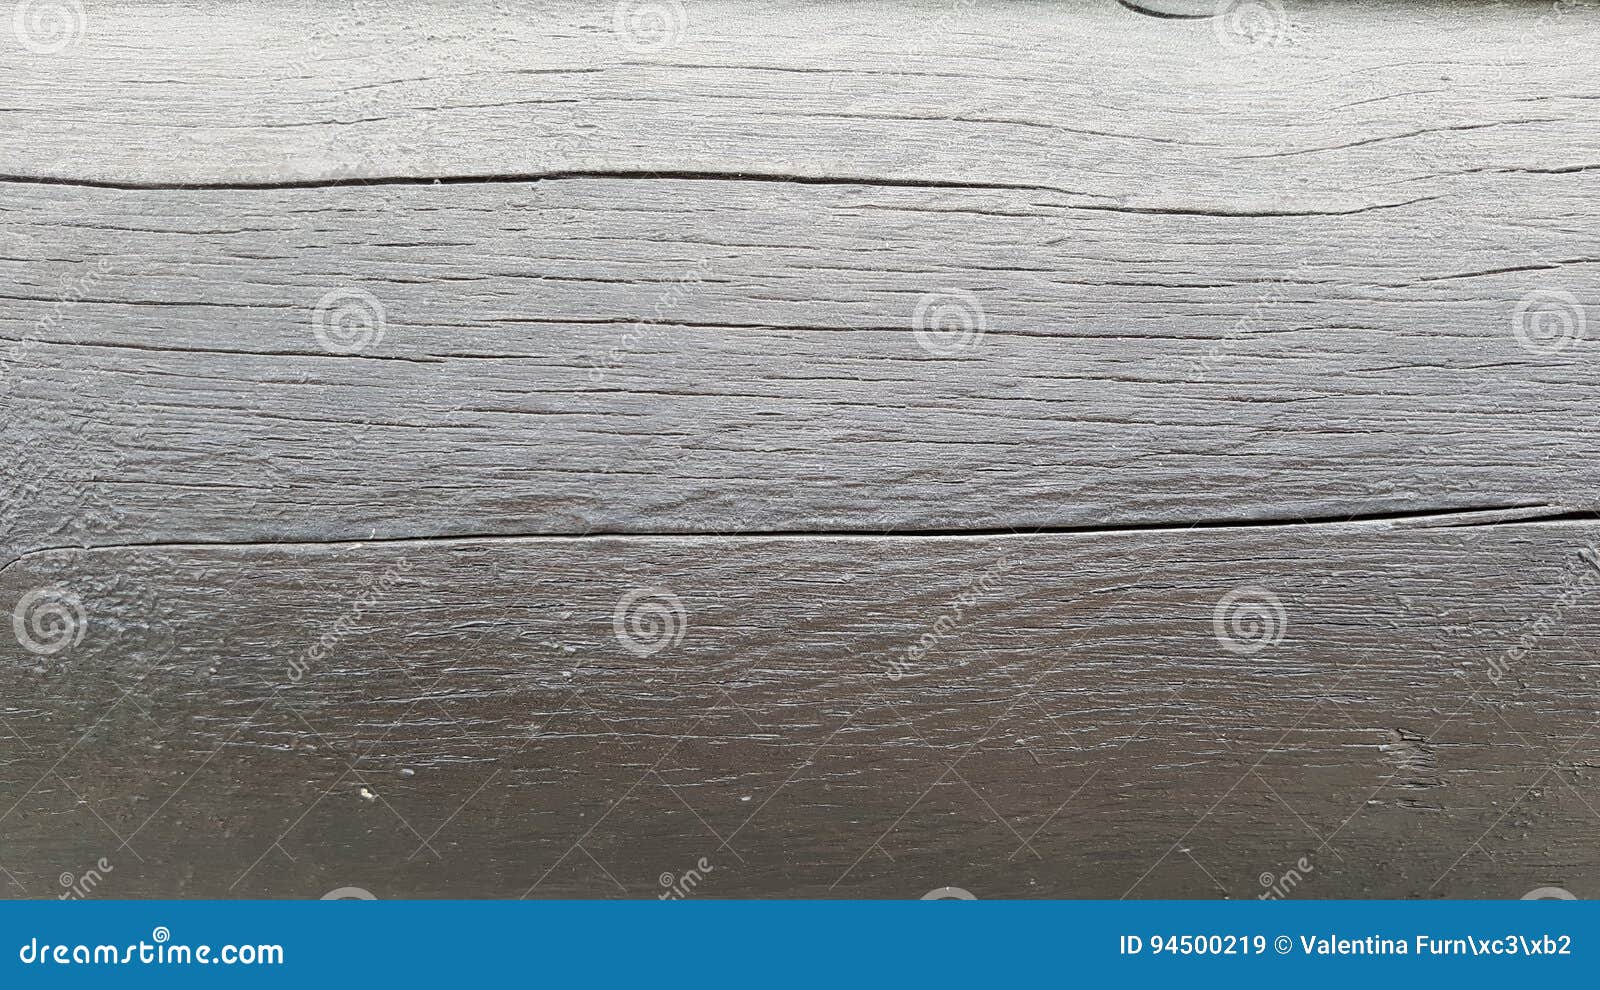 grey wooden panel - texture